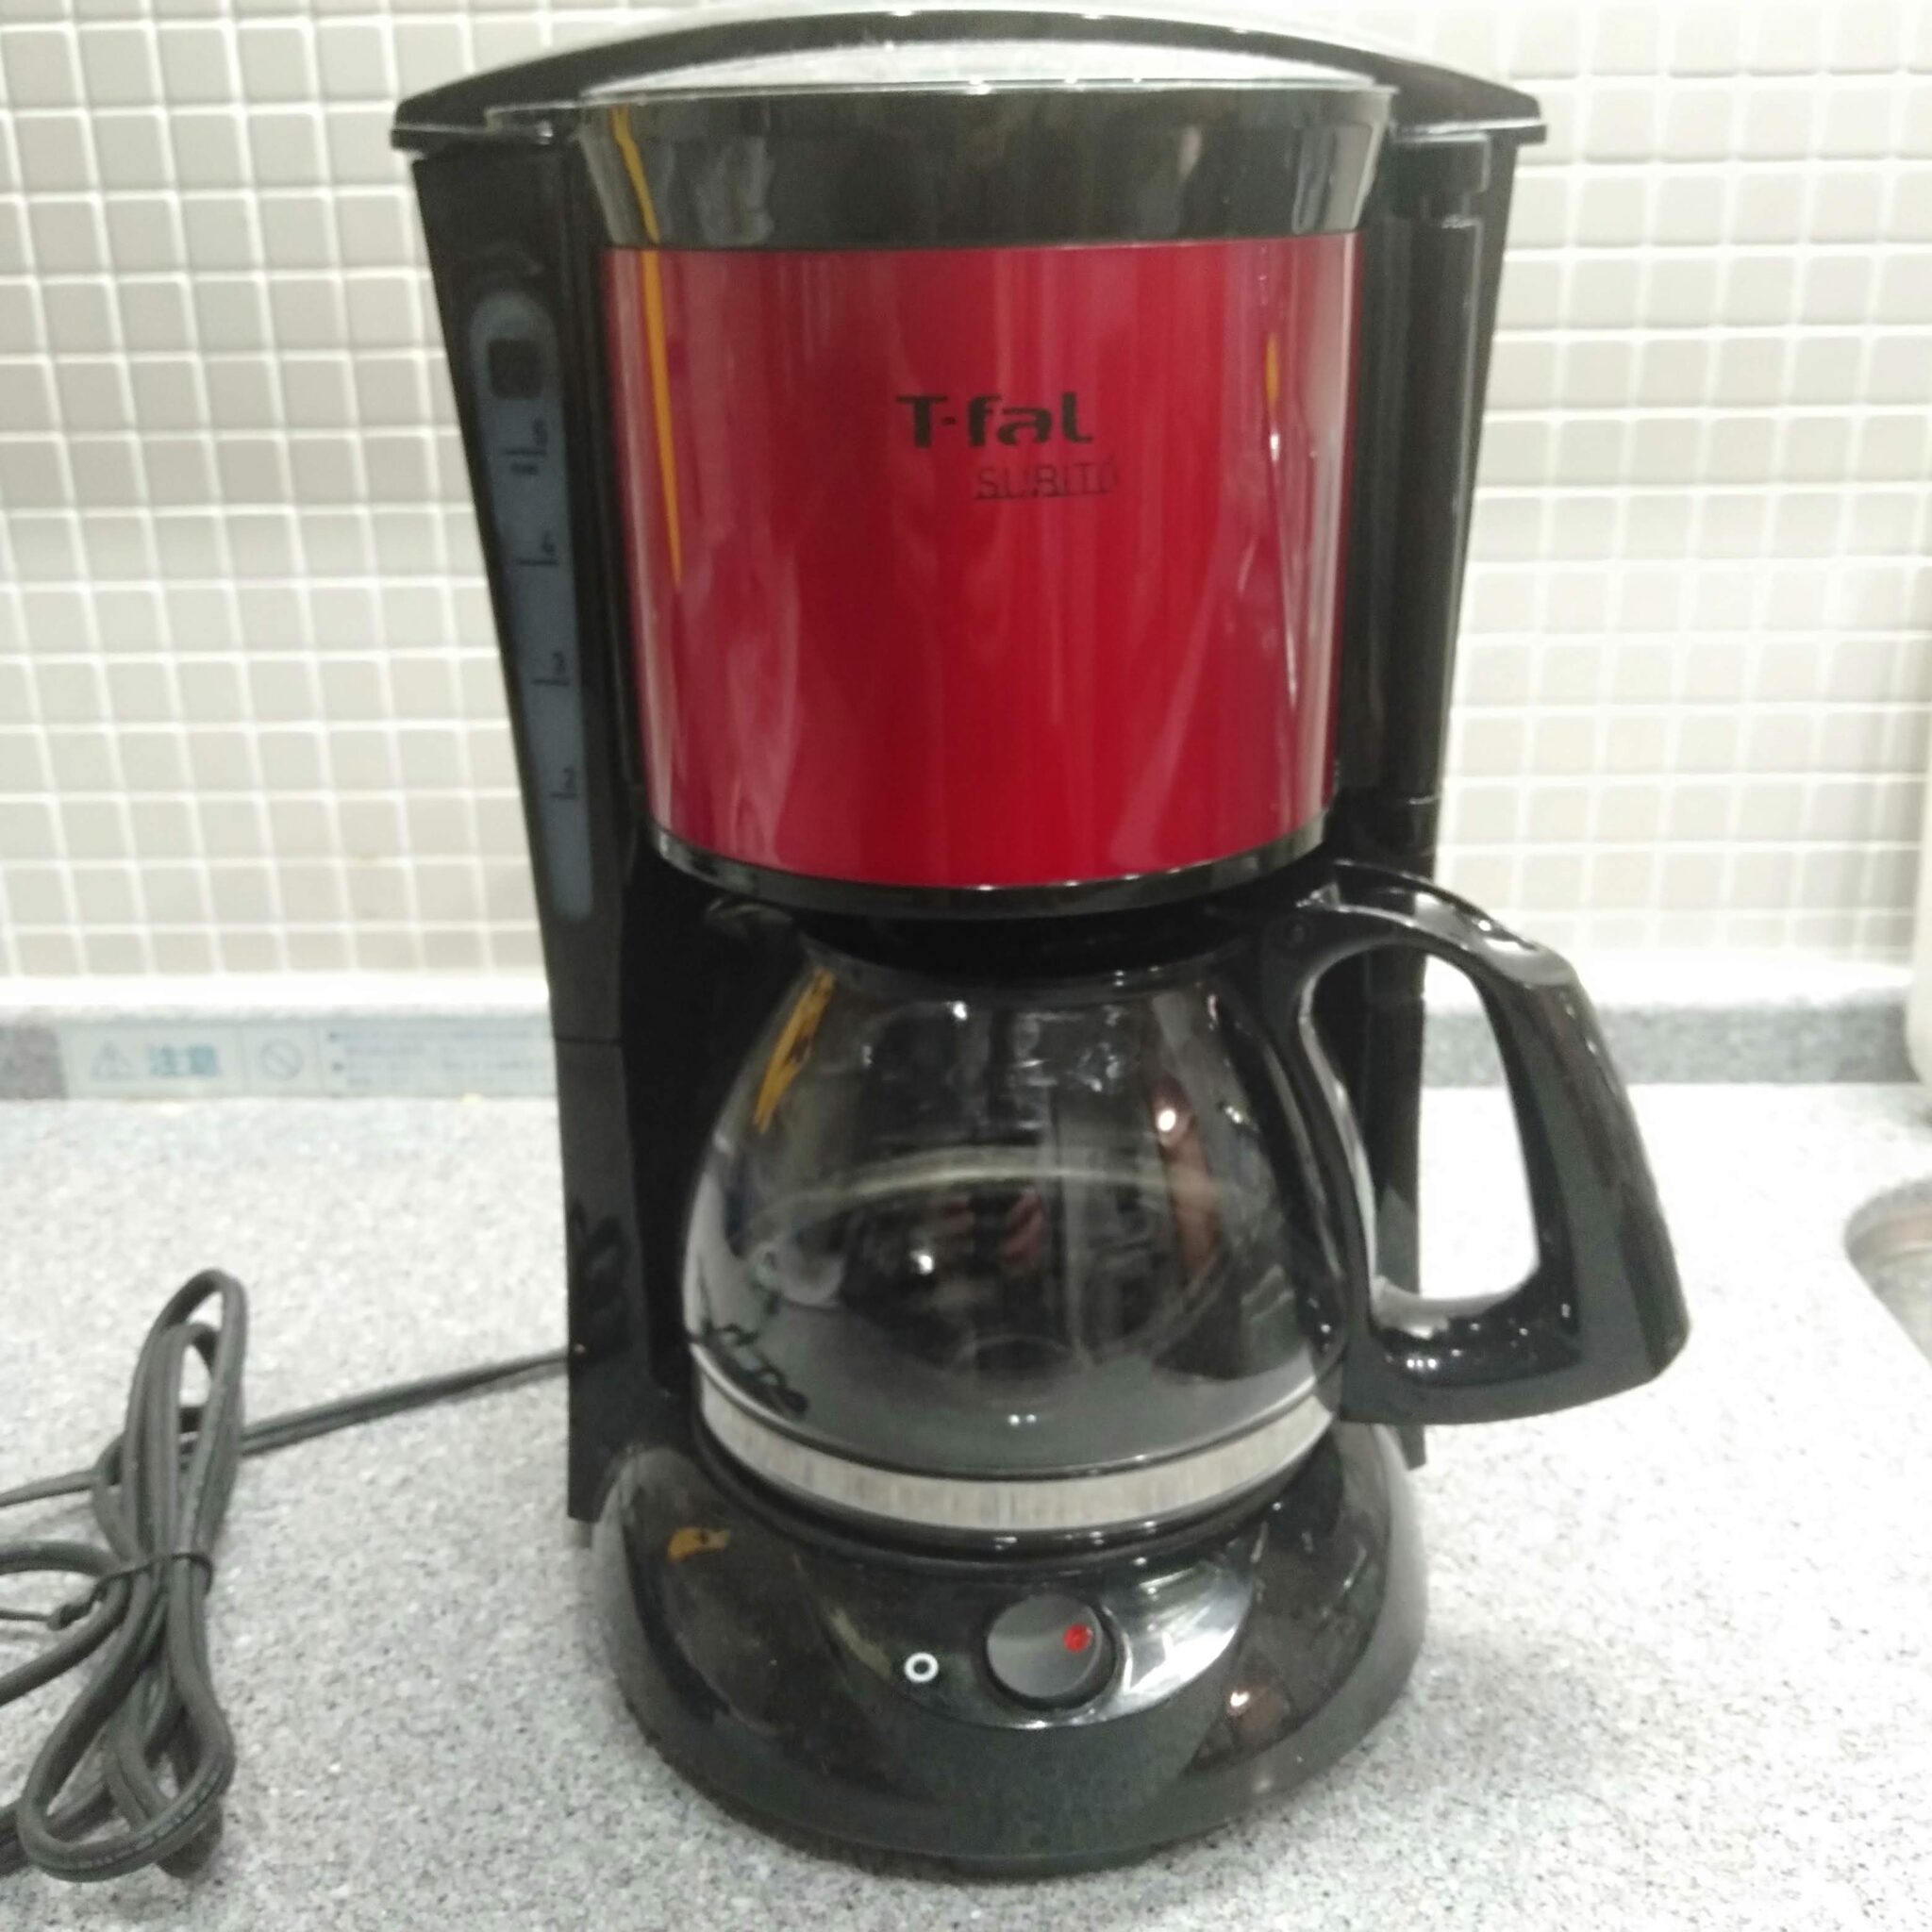 【初心者向け】最初のコーヒーメーカーはティファールのスビトがおすすめ | Iwaken Blog